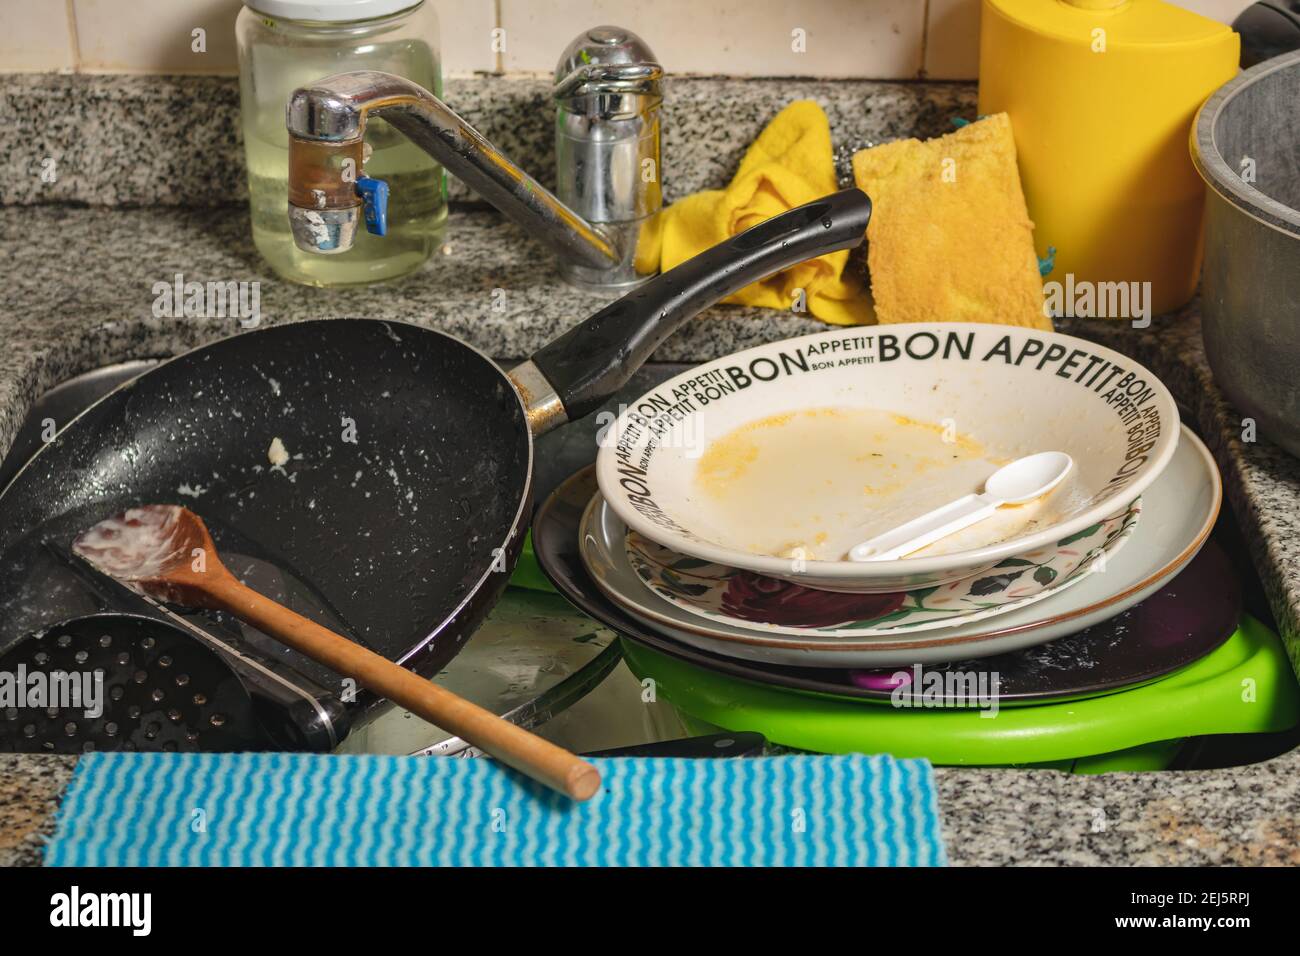 Set mit schmutzigem Geschirr, Besteck und Pfannen im Waschbecken bereit zum Waschen. Stockfoto